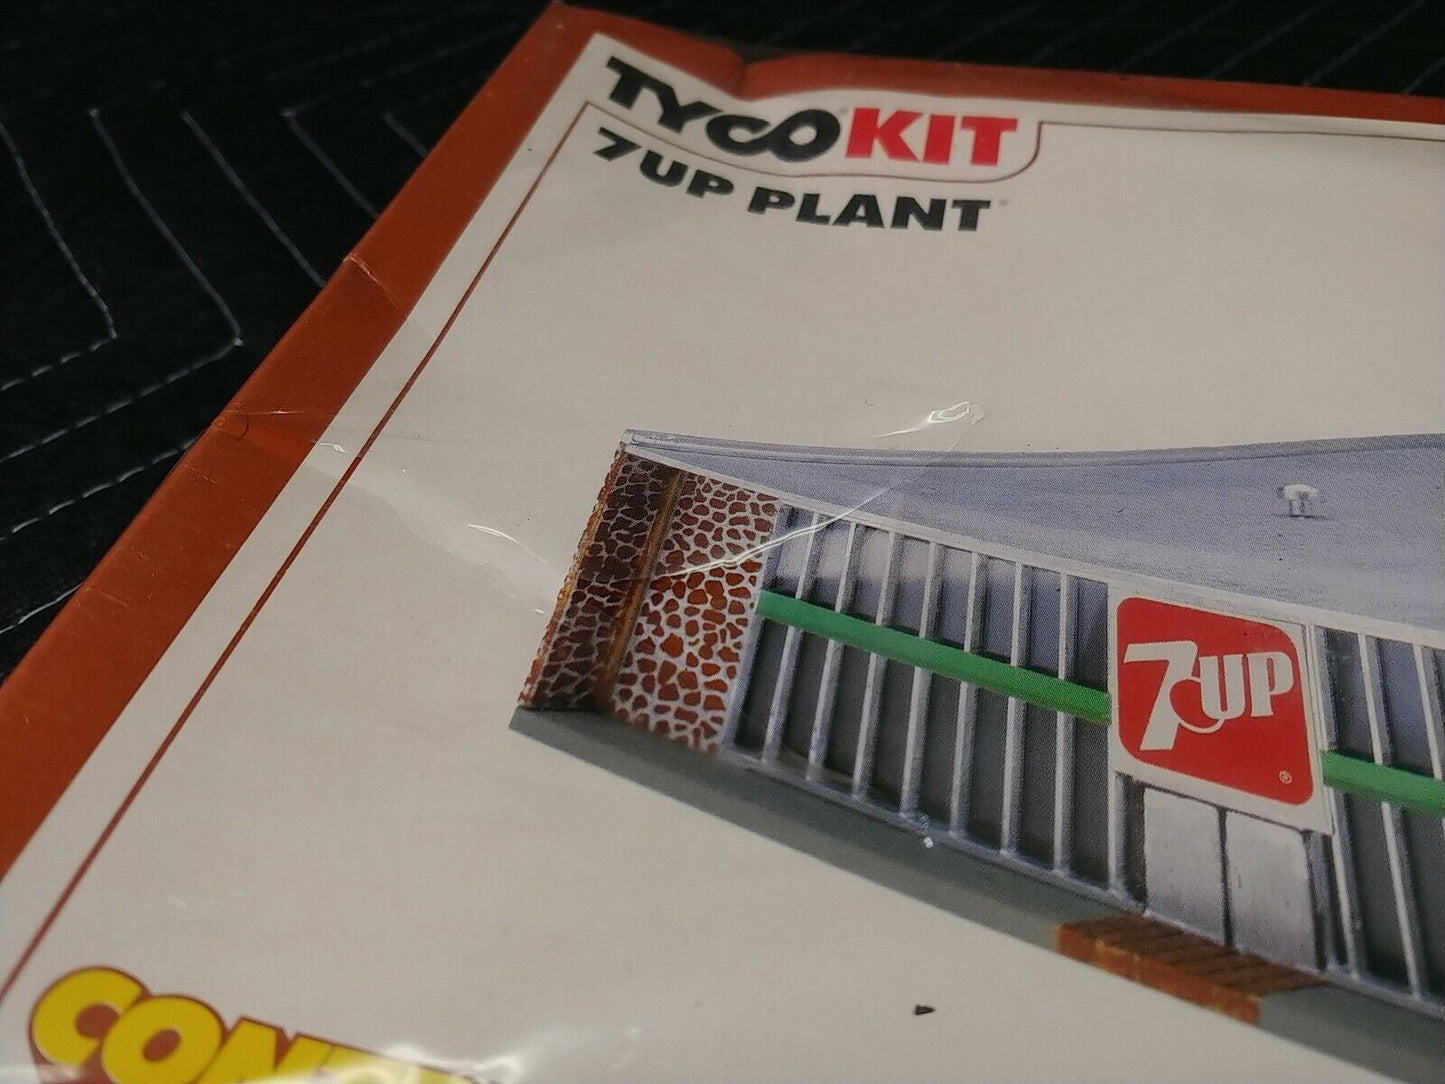 Tyco HO 7 UP Plant Kit # 7727/Sealed